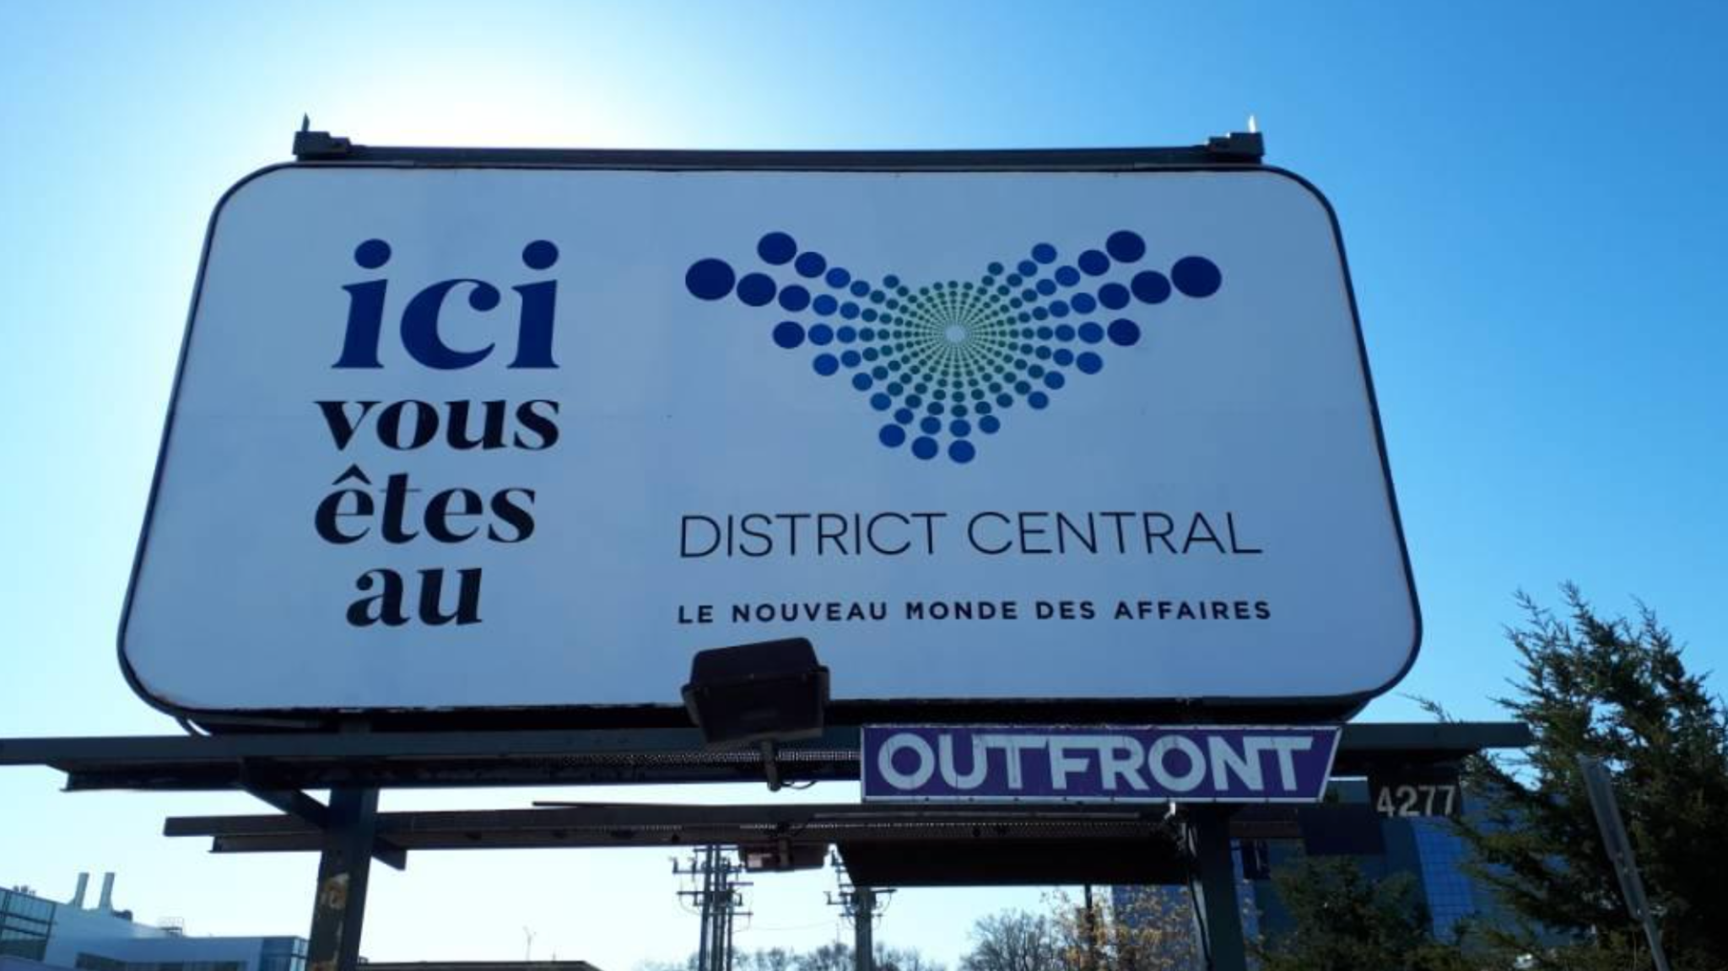 District Central billboard
campaign